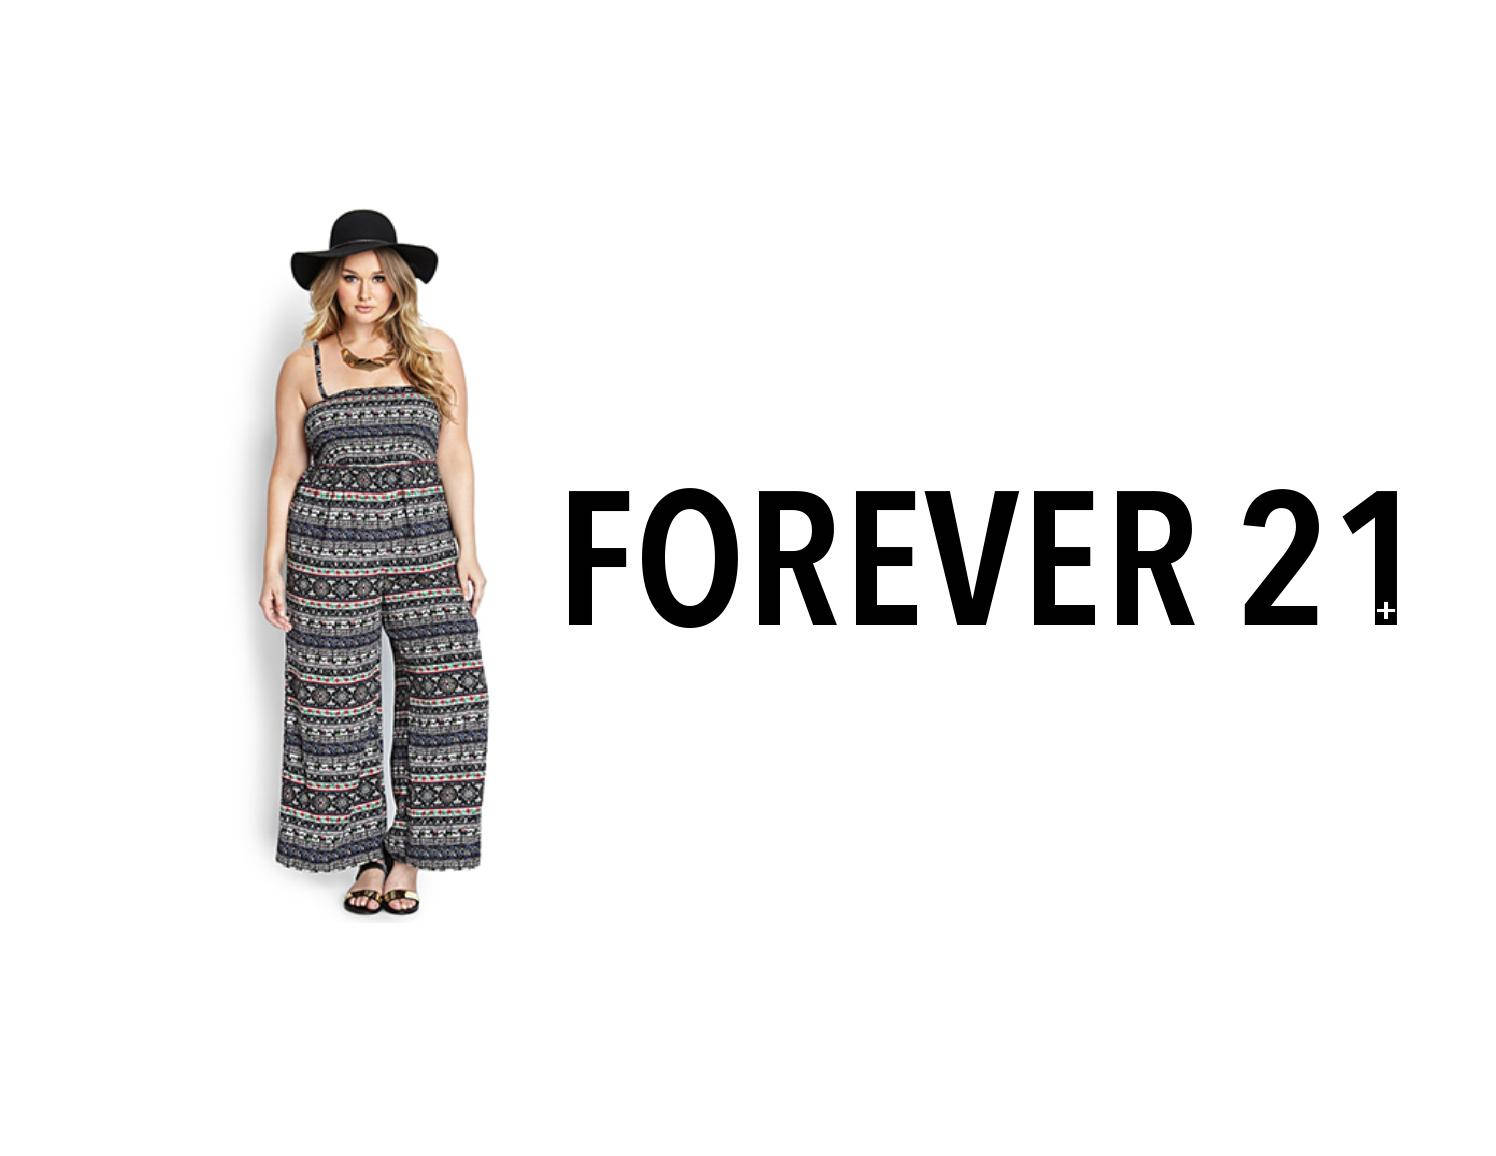 Forever 21 Stylish Fashion Brand Background